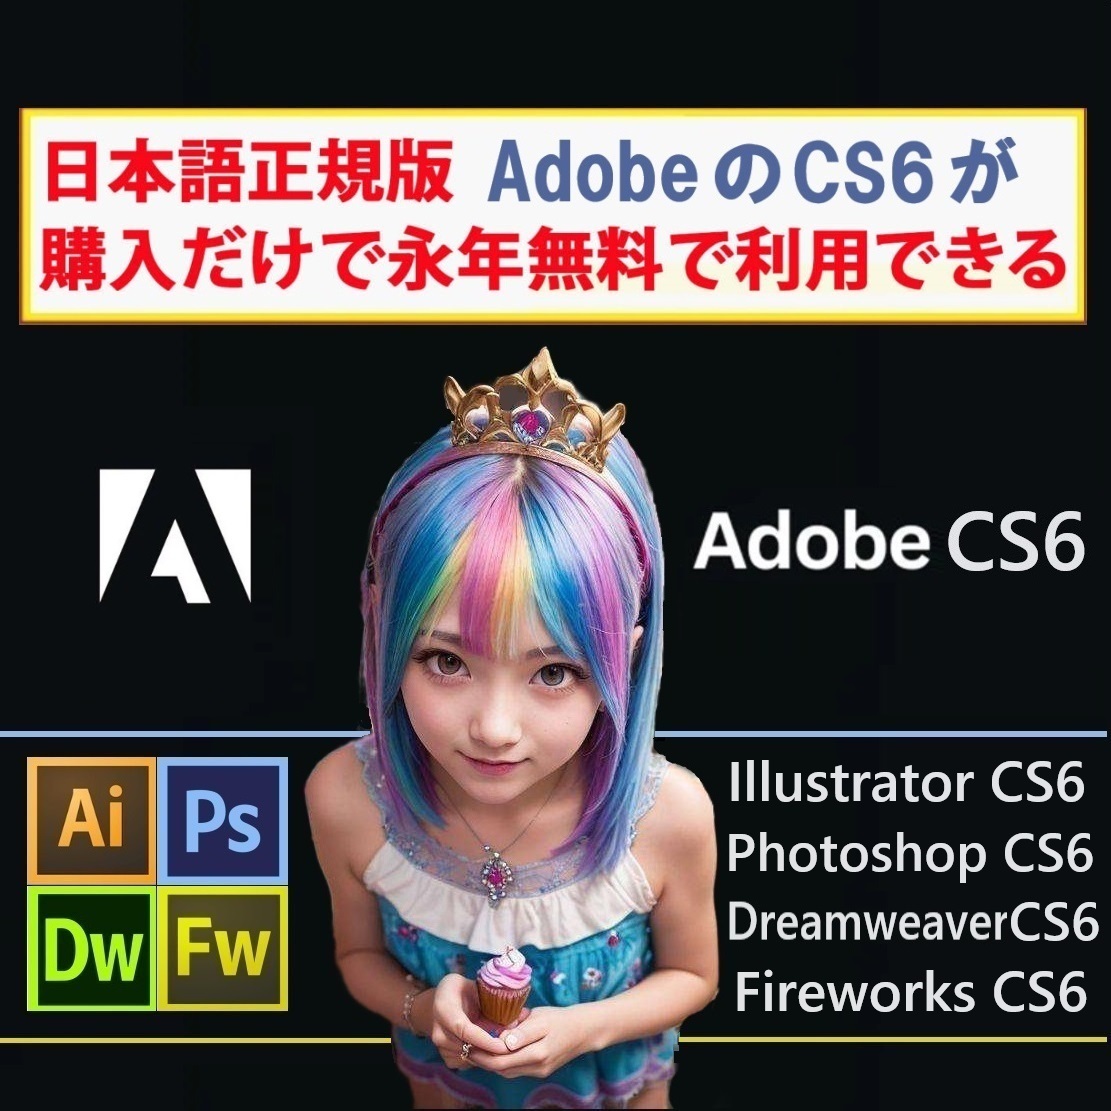 Adobe CS6が4種 Win版 (10/11対応) Illustrator CS6/Adobe Photoshop CS6/Dreamweaver CS6/Fireworks CS6【全シリアル番号完備】Type-Z_画像1